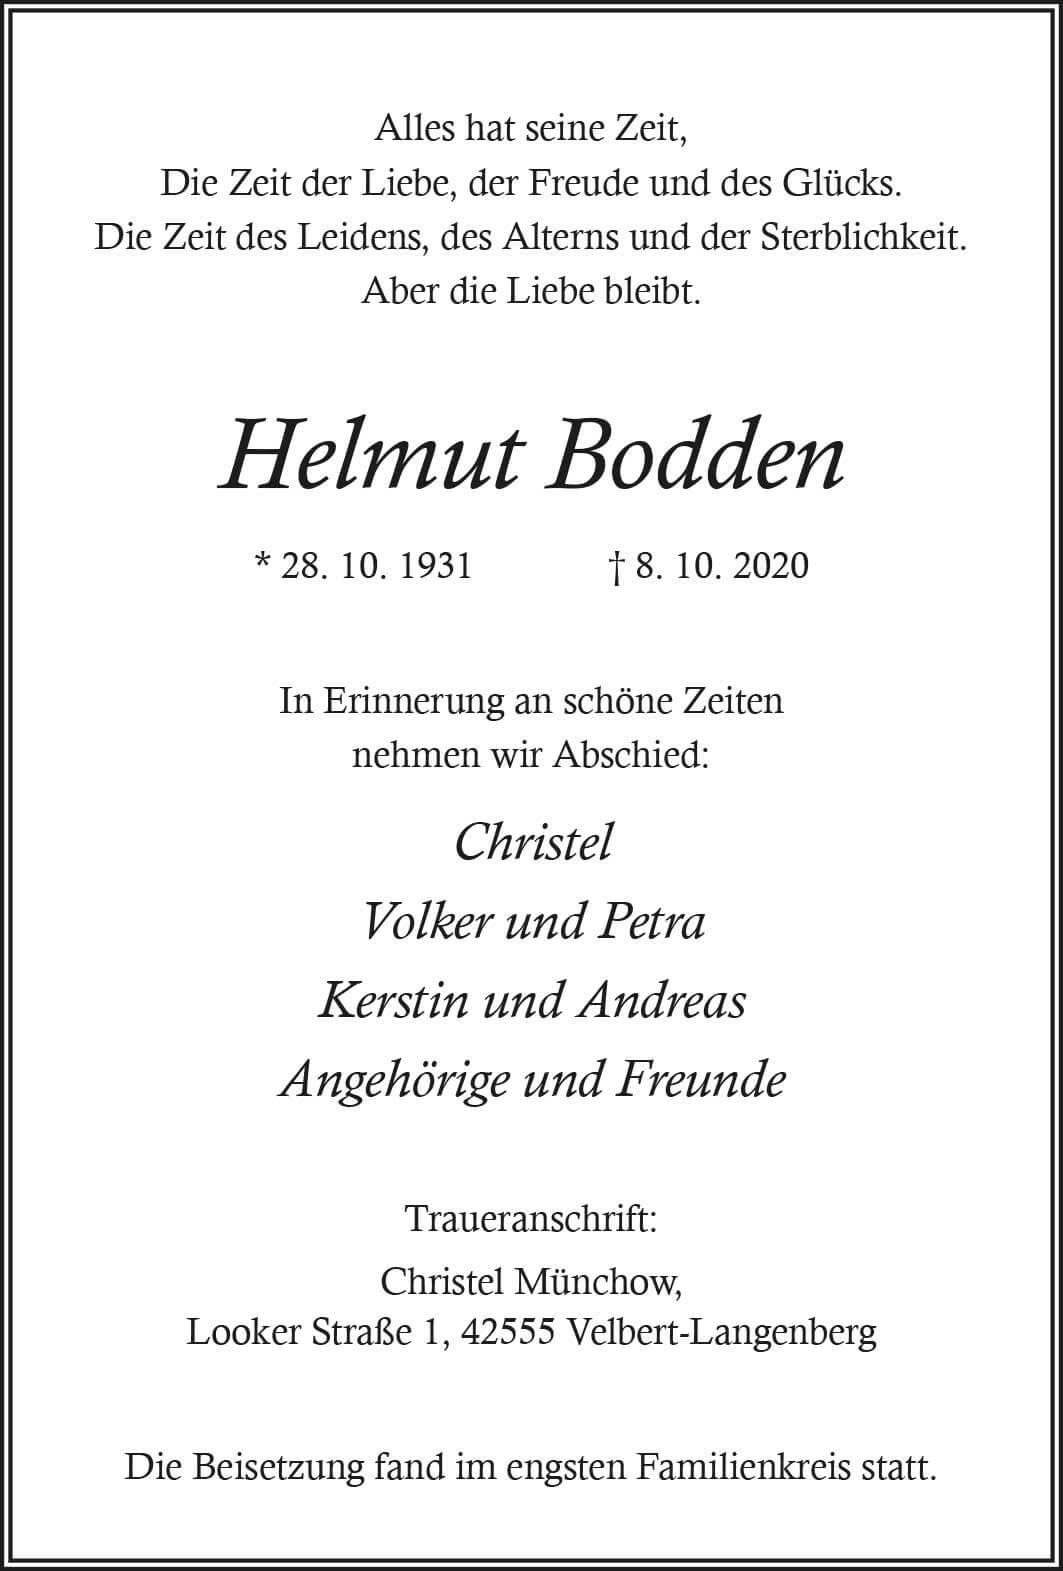 Helmut Bodden † 8. 10. 2020